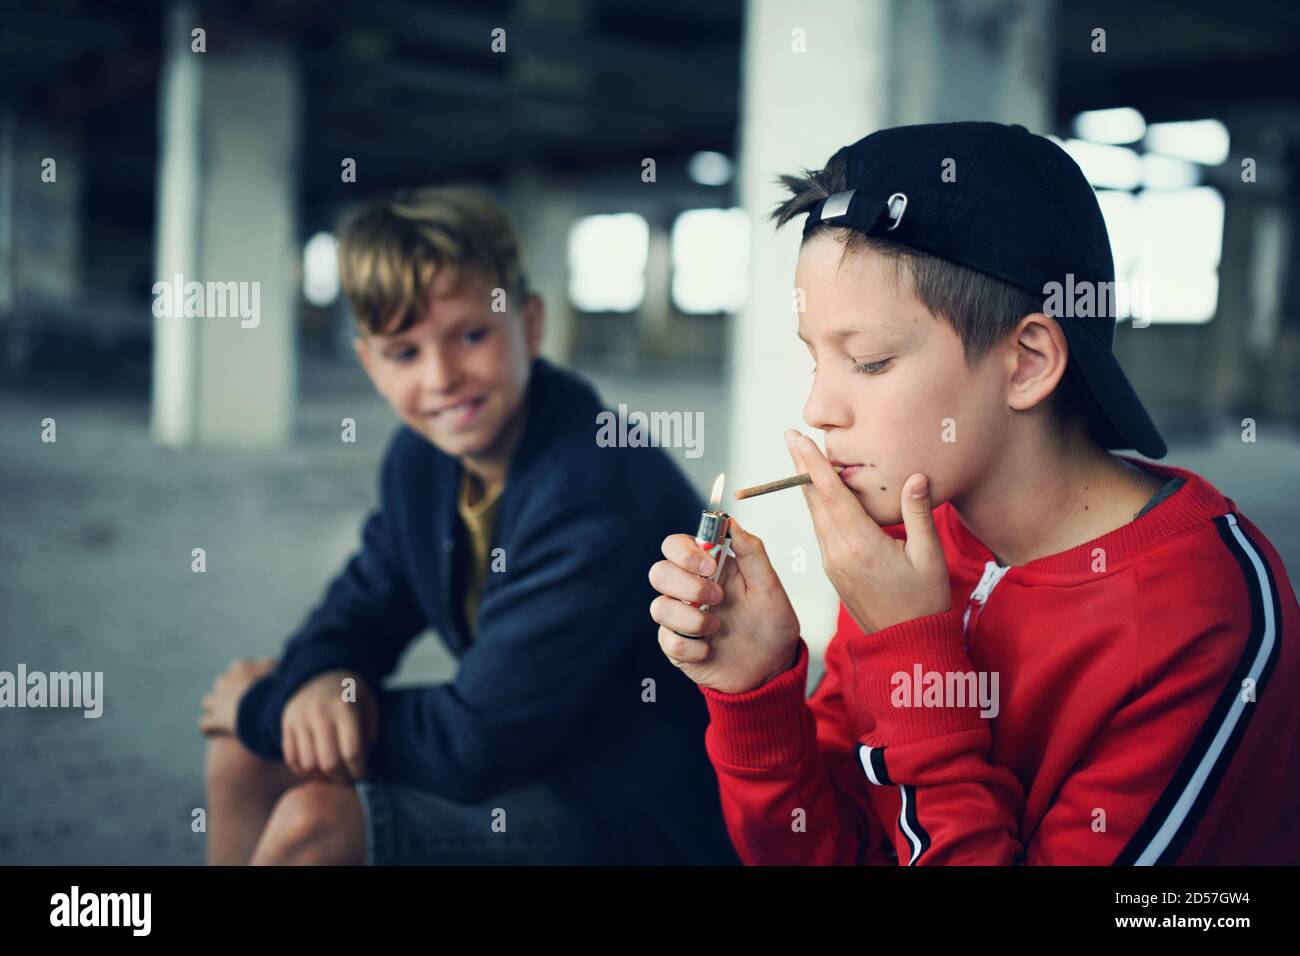 Gruppo di ragazzi adolescenti all'interno di un edificio abbandonato, sigarette fumanti. Foto Stock